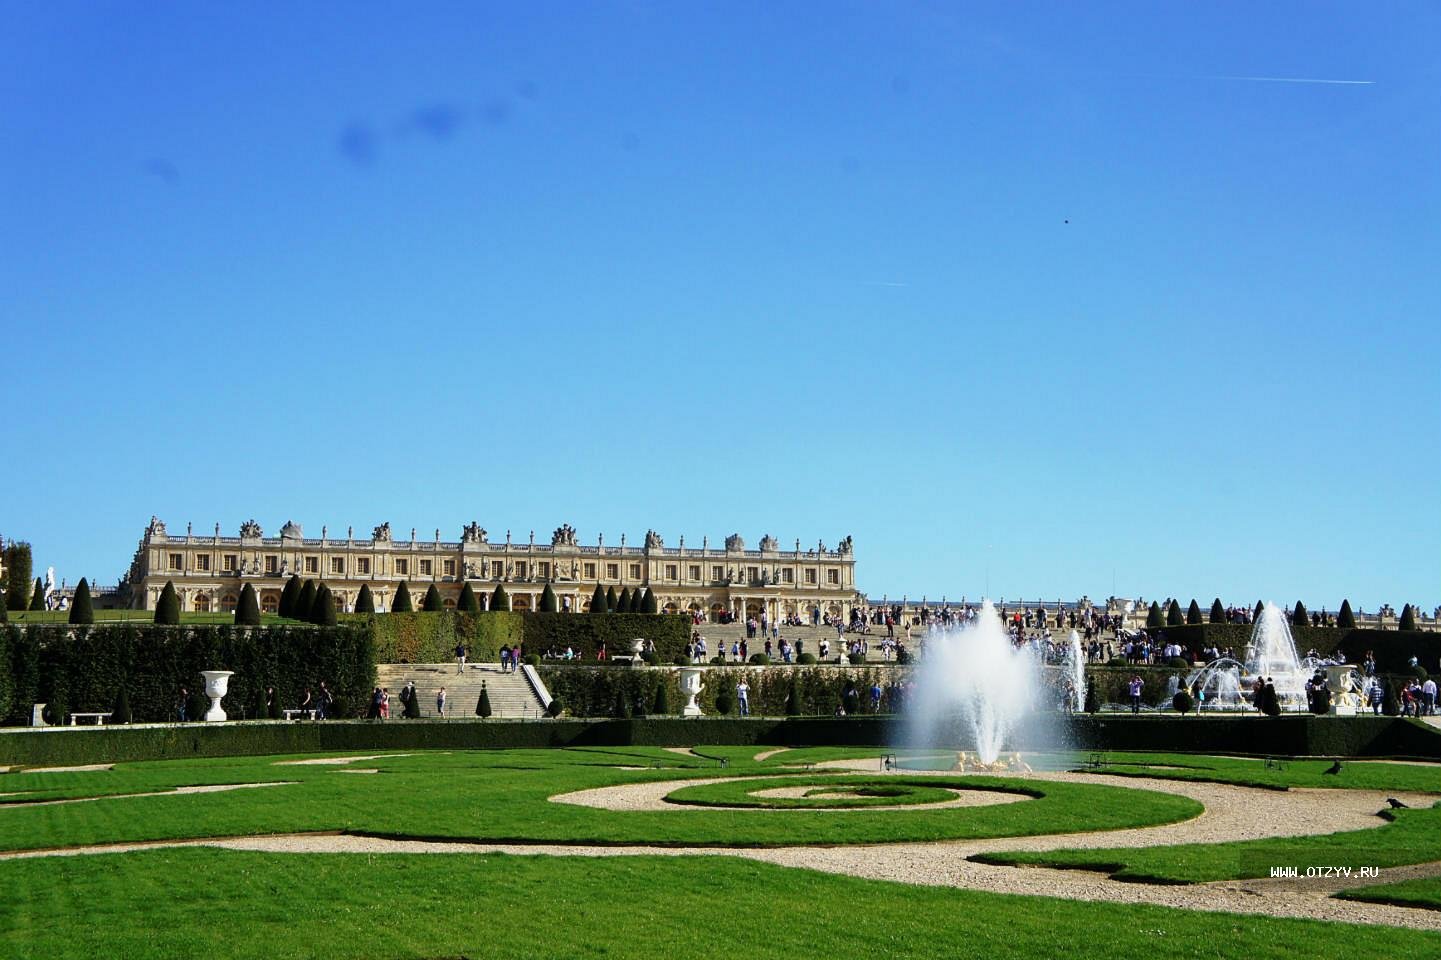 Французский версаль. Версальский дворцово-парковый комплекс, Франция. Версальский дворец, Версаль дворец Версаля. Дворец и парк в Версале Франция. Королевская резиденция Версаль.